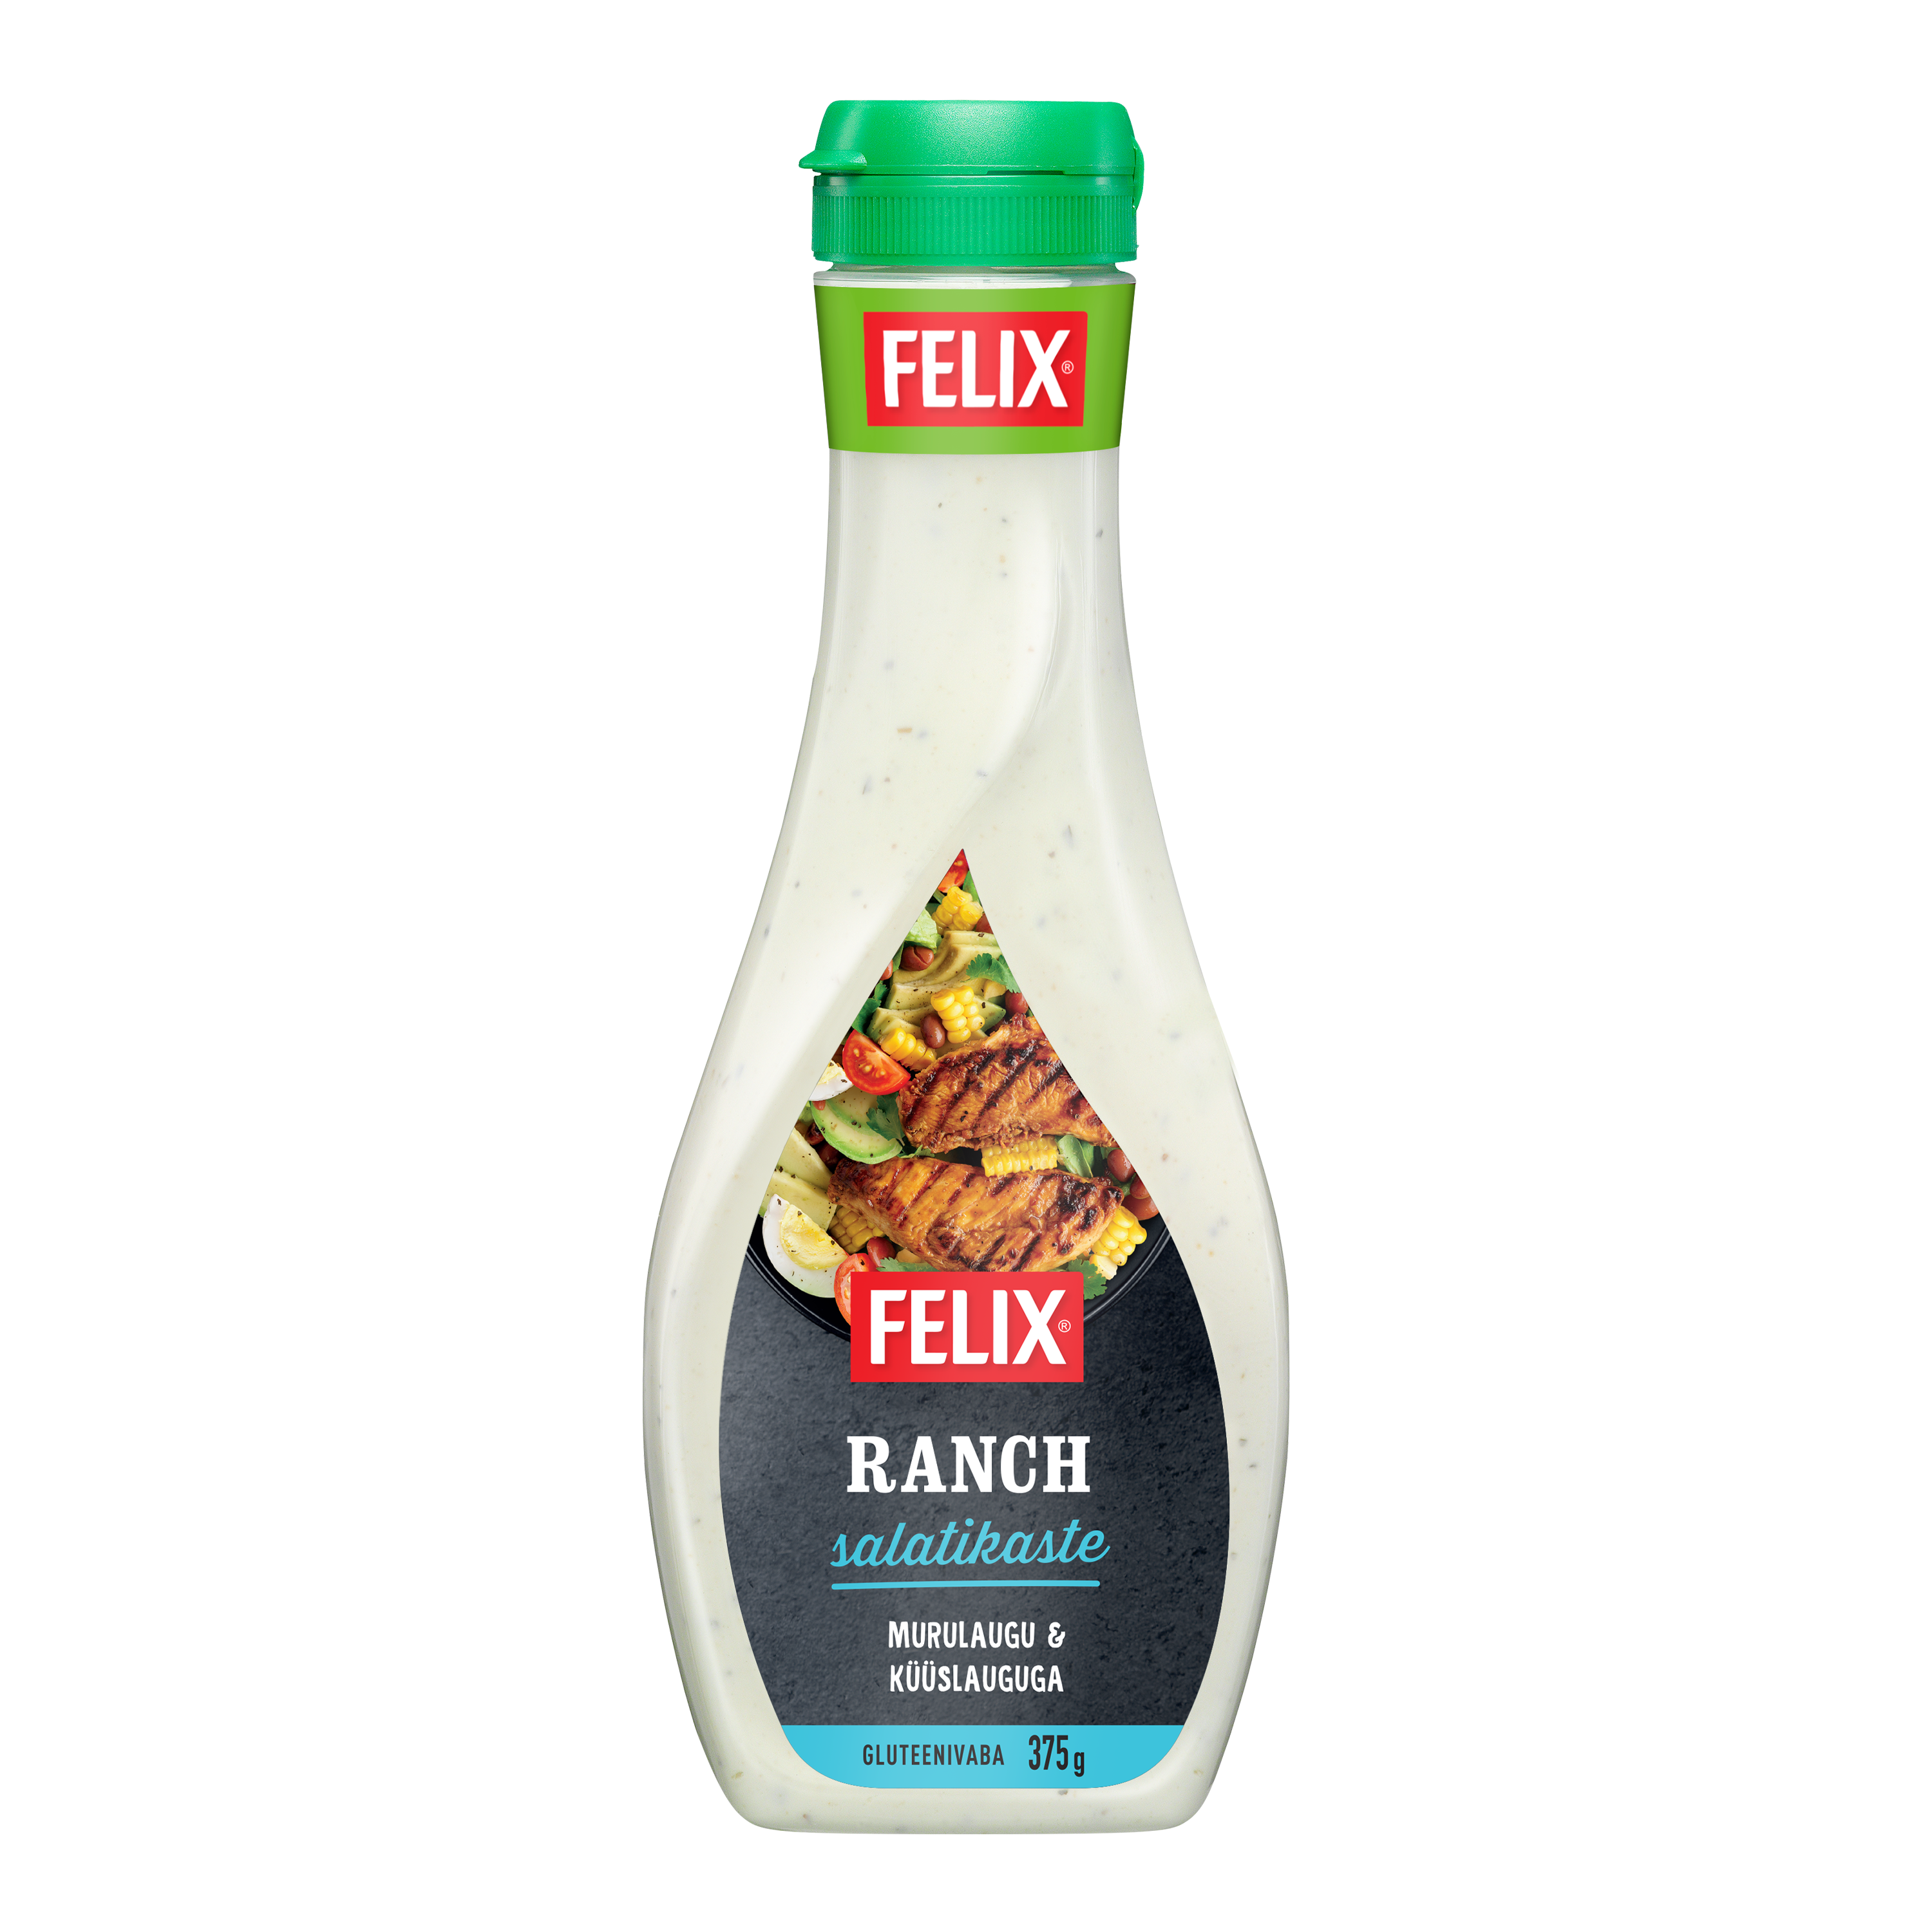 Felix Ranch salatikaste 375g